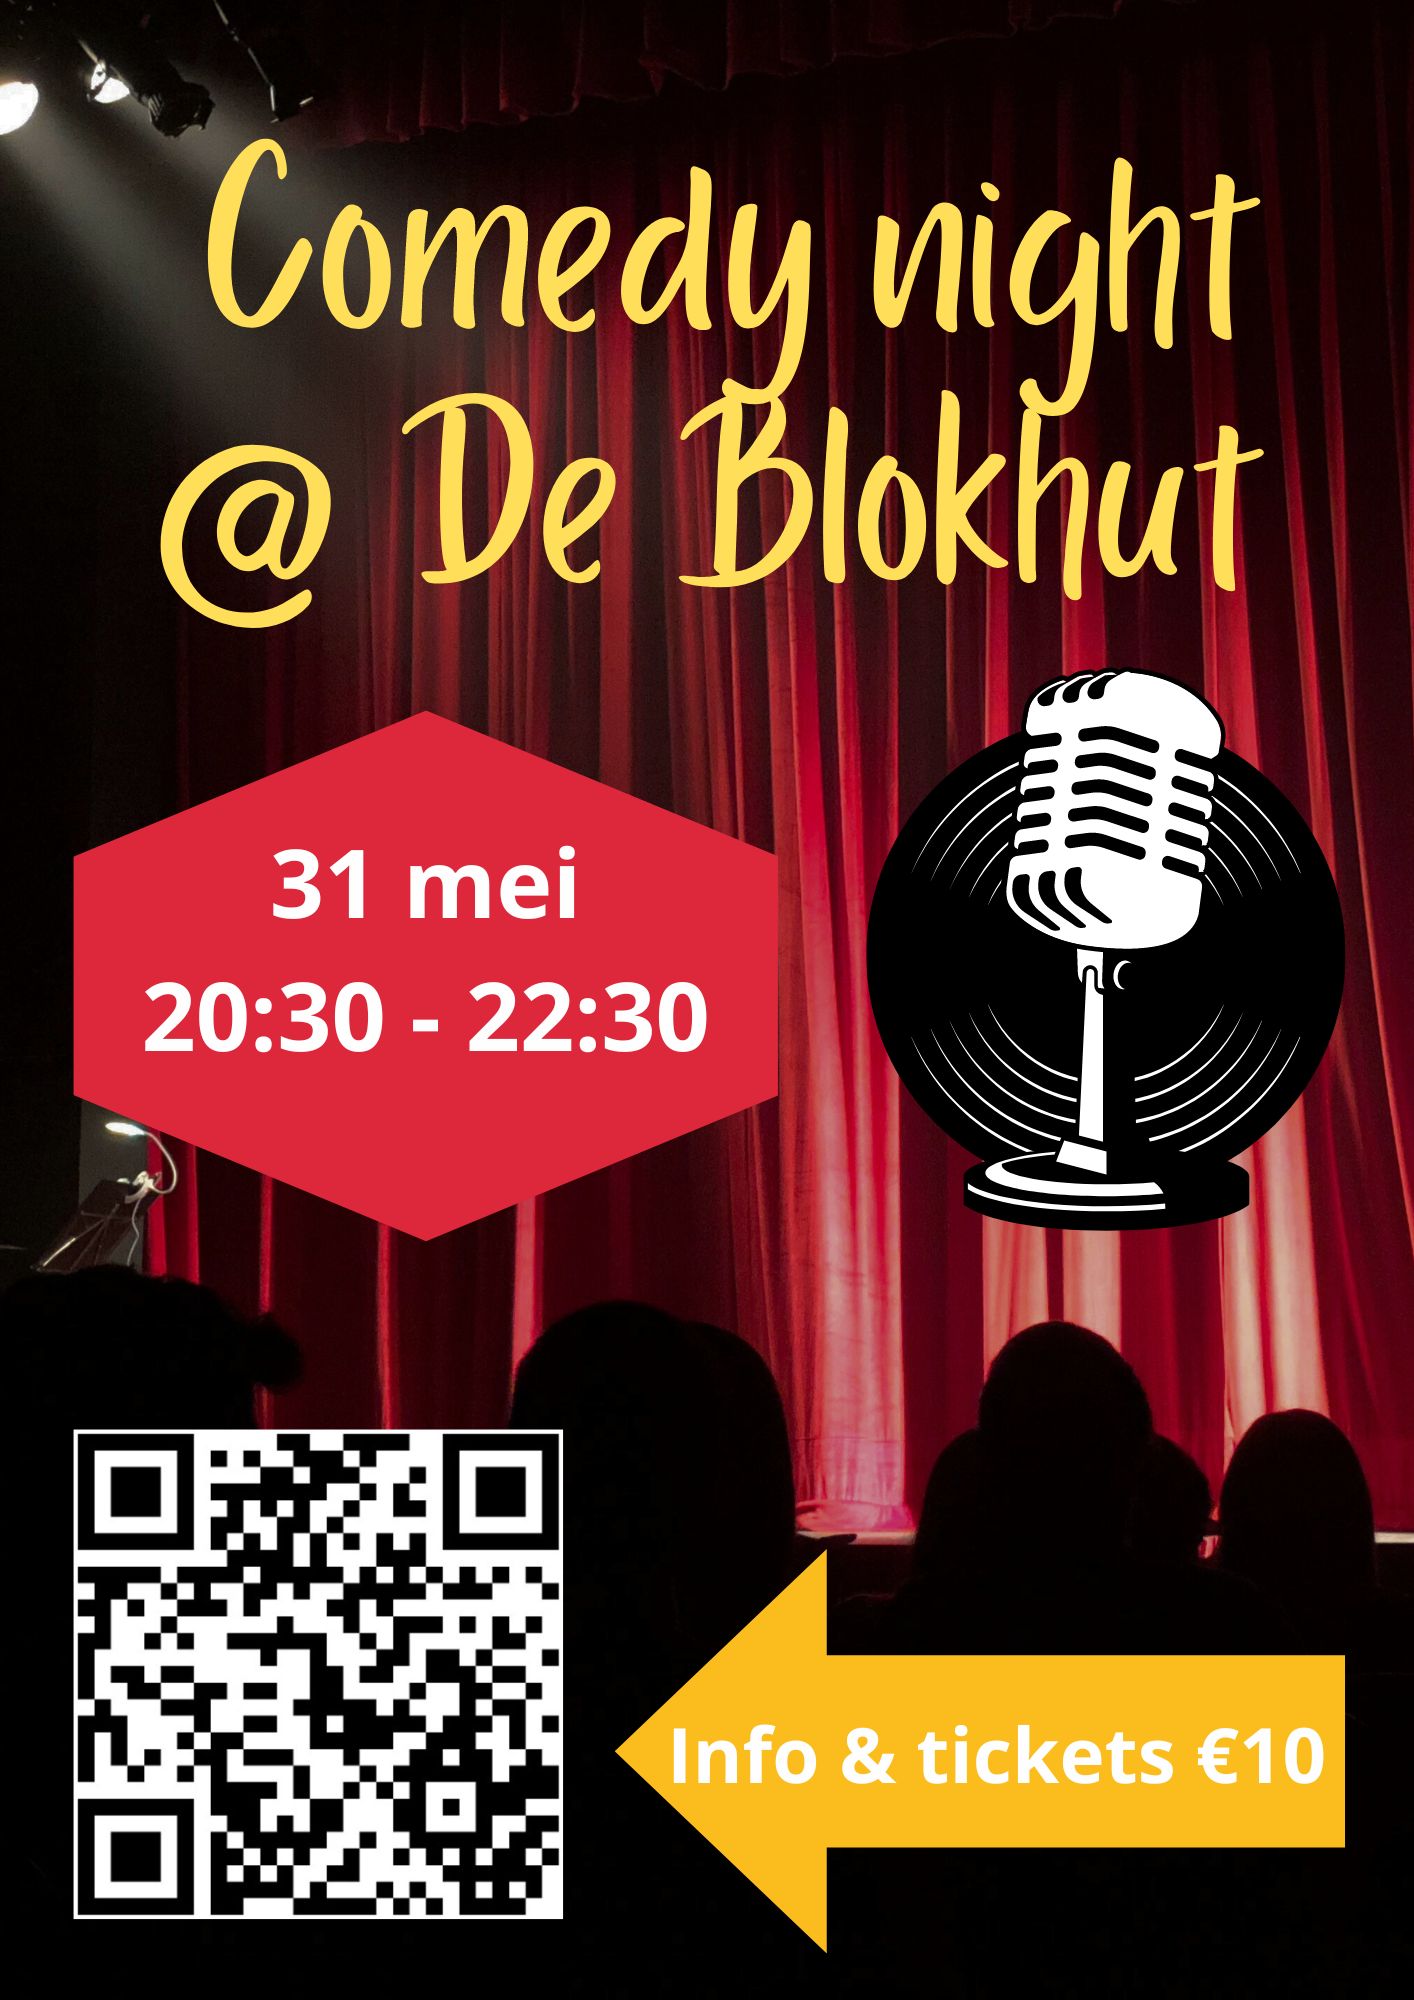 Ticket kopen voor evenement Comedy @ De Blokhut